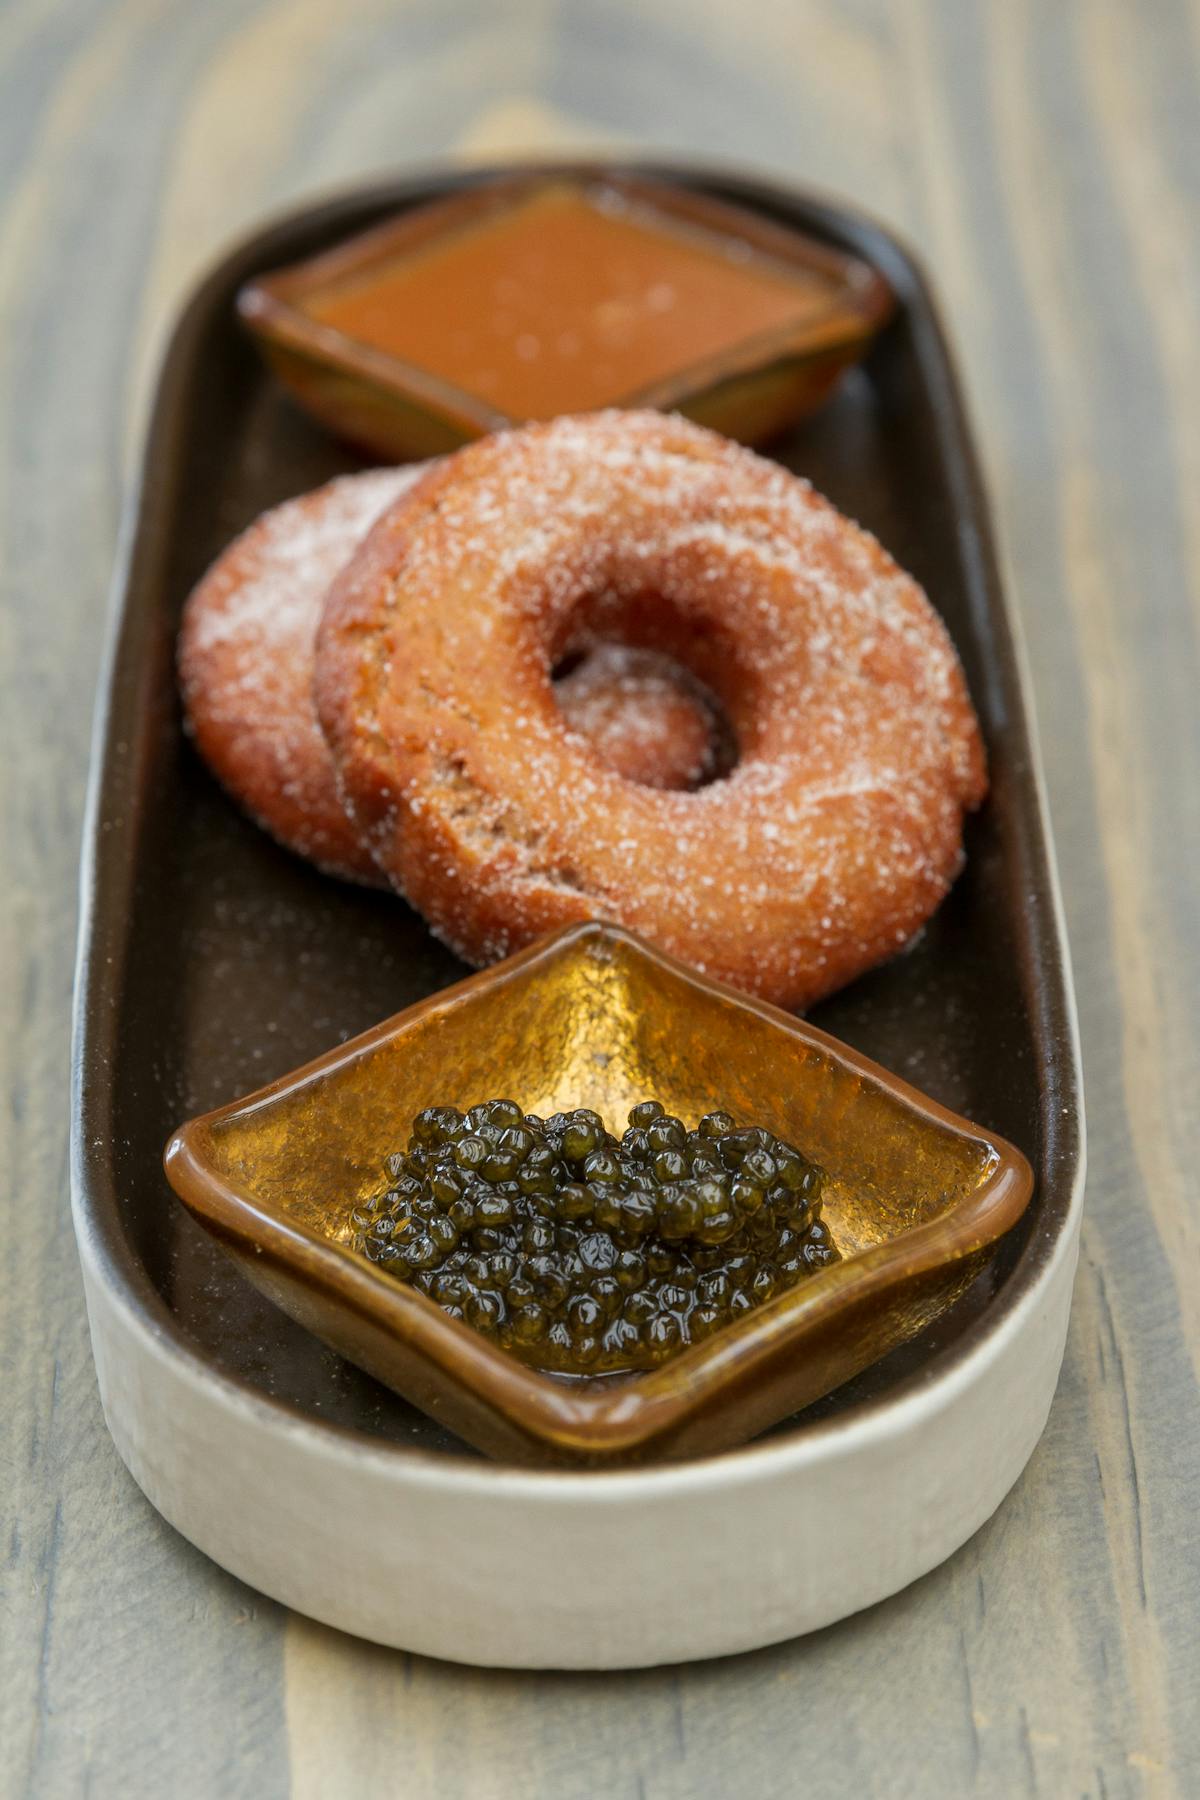 a doughnut on a plate